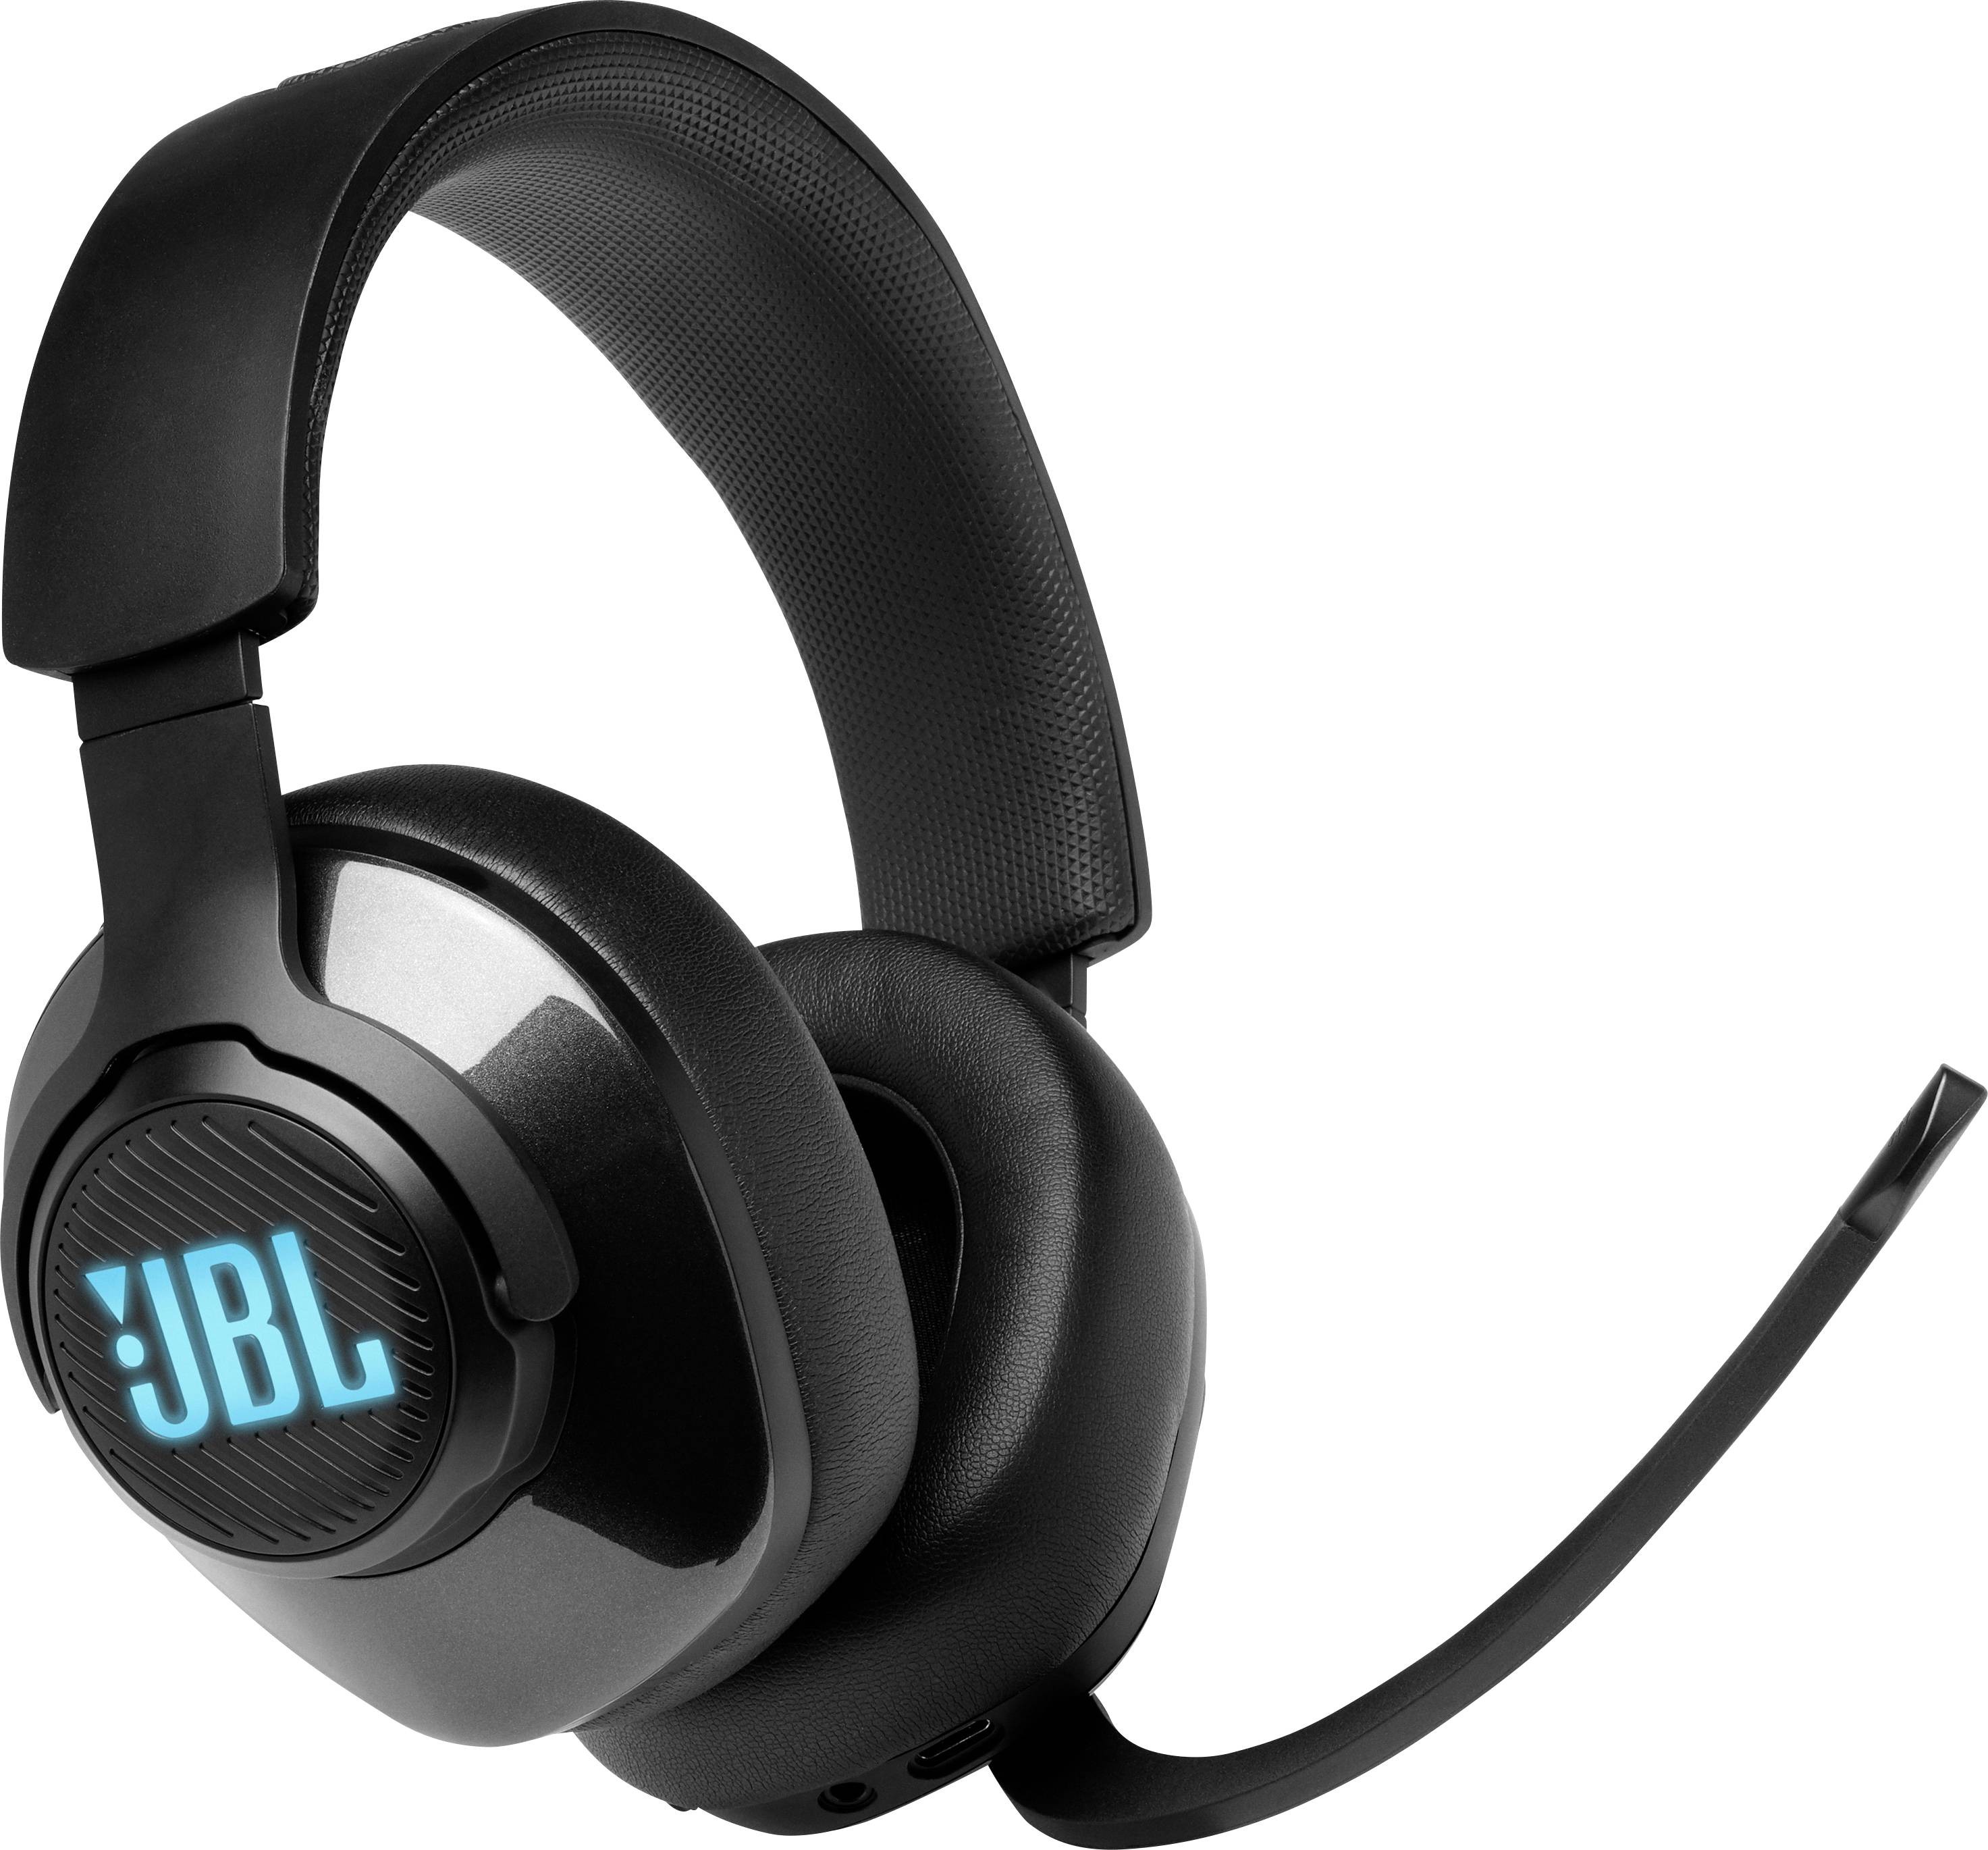 هدست جی بی ال JBL QUANTUM 400 Gaming Headset